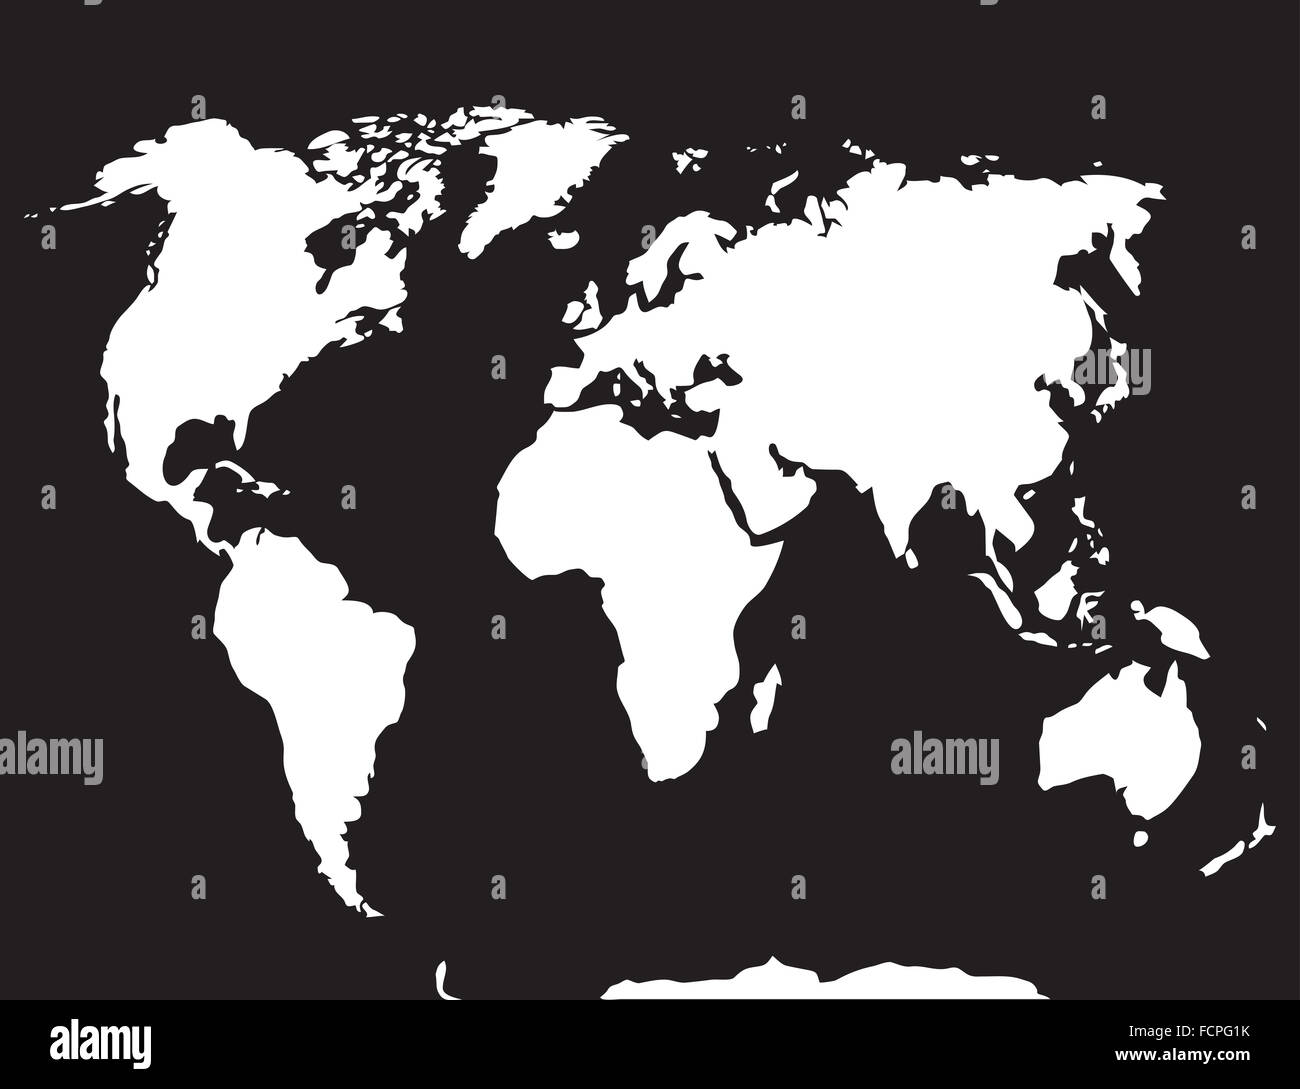 Landkarte Welt schwarz weiß. Atlas Globus Erde Kontinent und Ozean, Ländern und Europa. Vektor Kunst abstrakte ausgefallene Mode Stockfoto